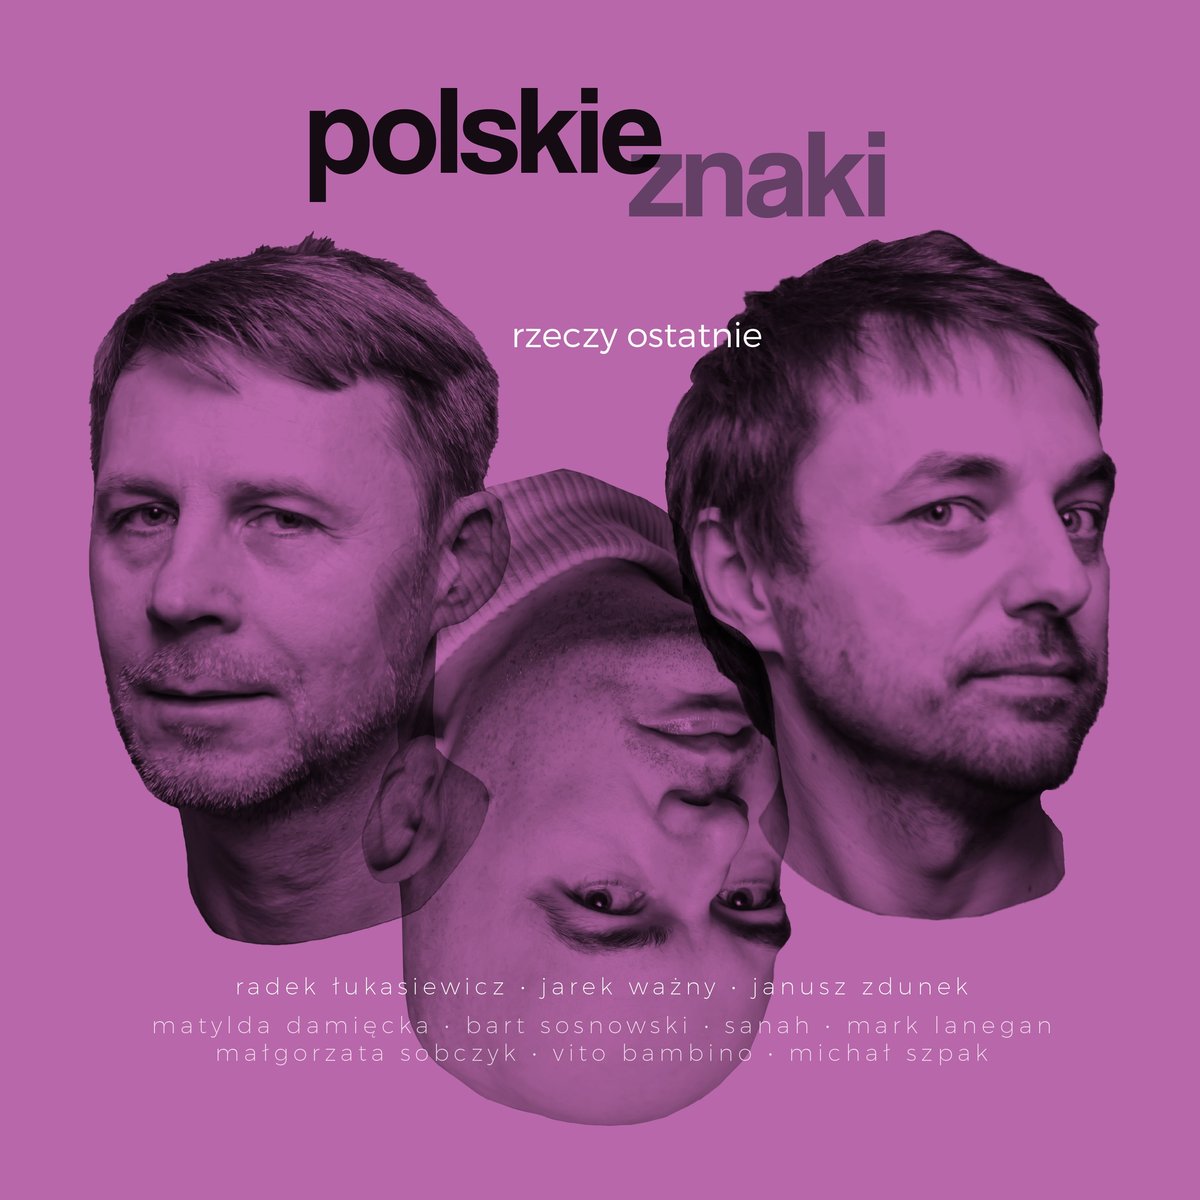 Polskie Znaki Rzeczy ostatnie cover artwork